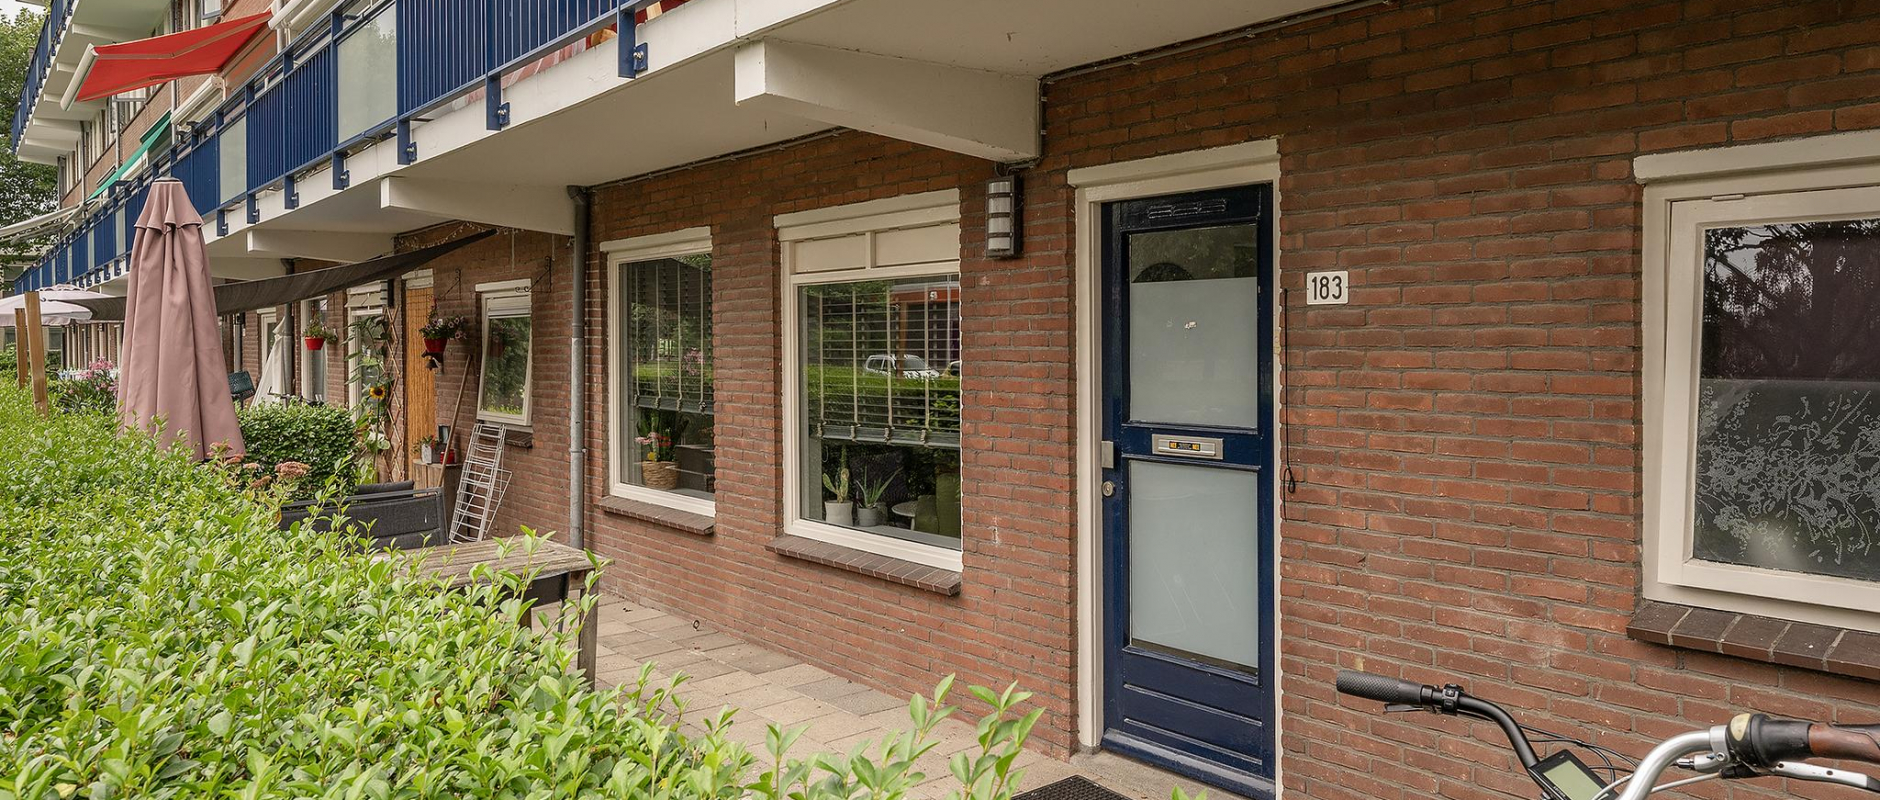 Woning te koop aan de Obrechtstraat 183 te Zwolle